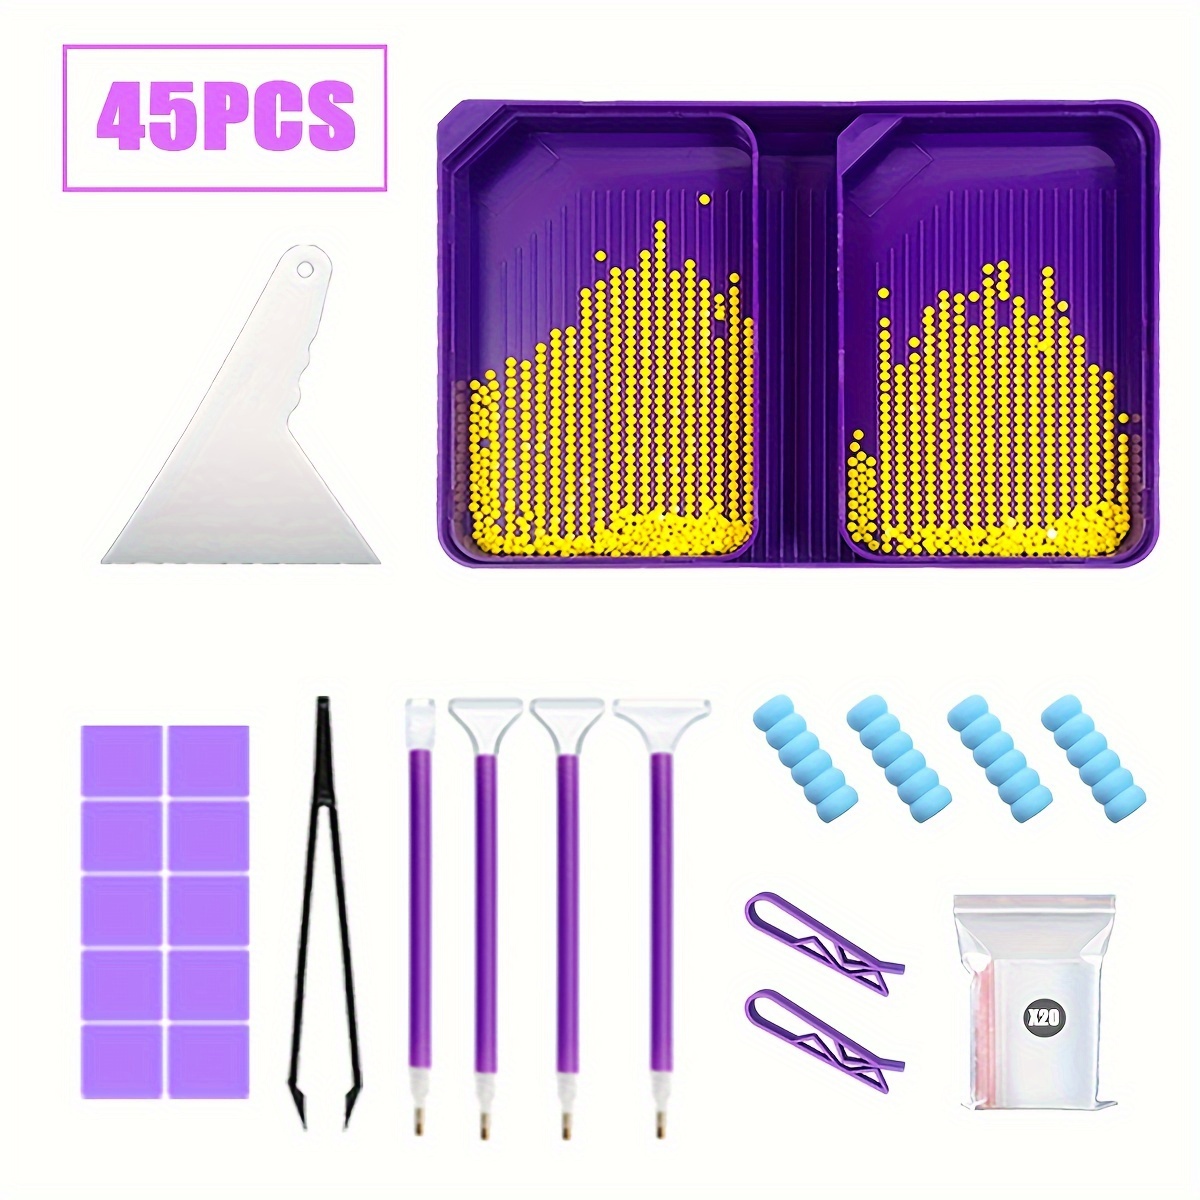 45pcs Diamond Painting Tool Kit Set